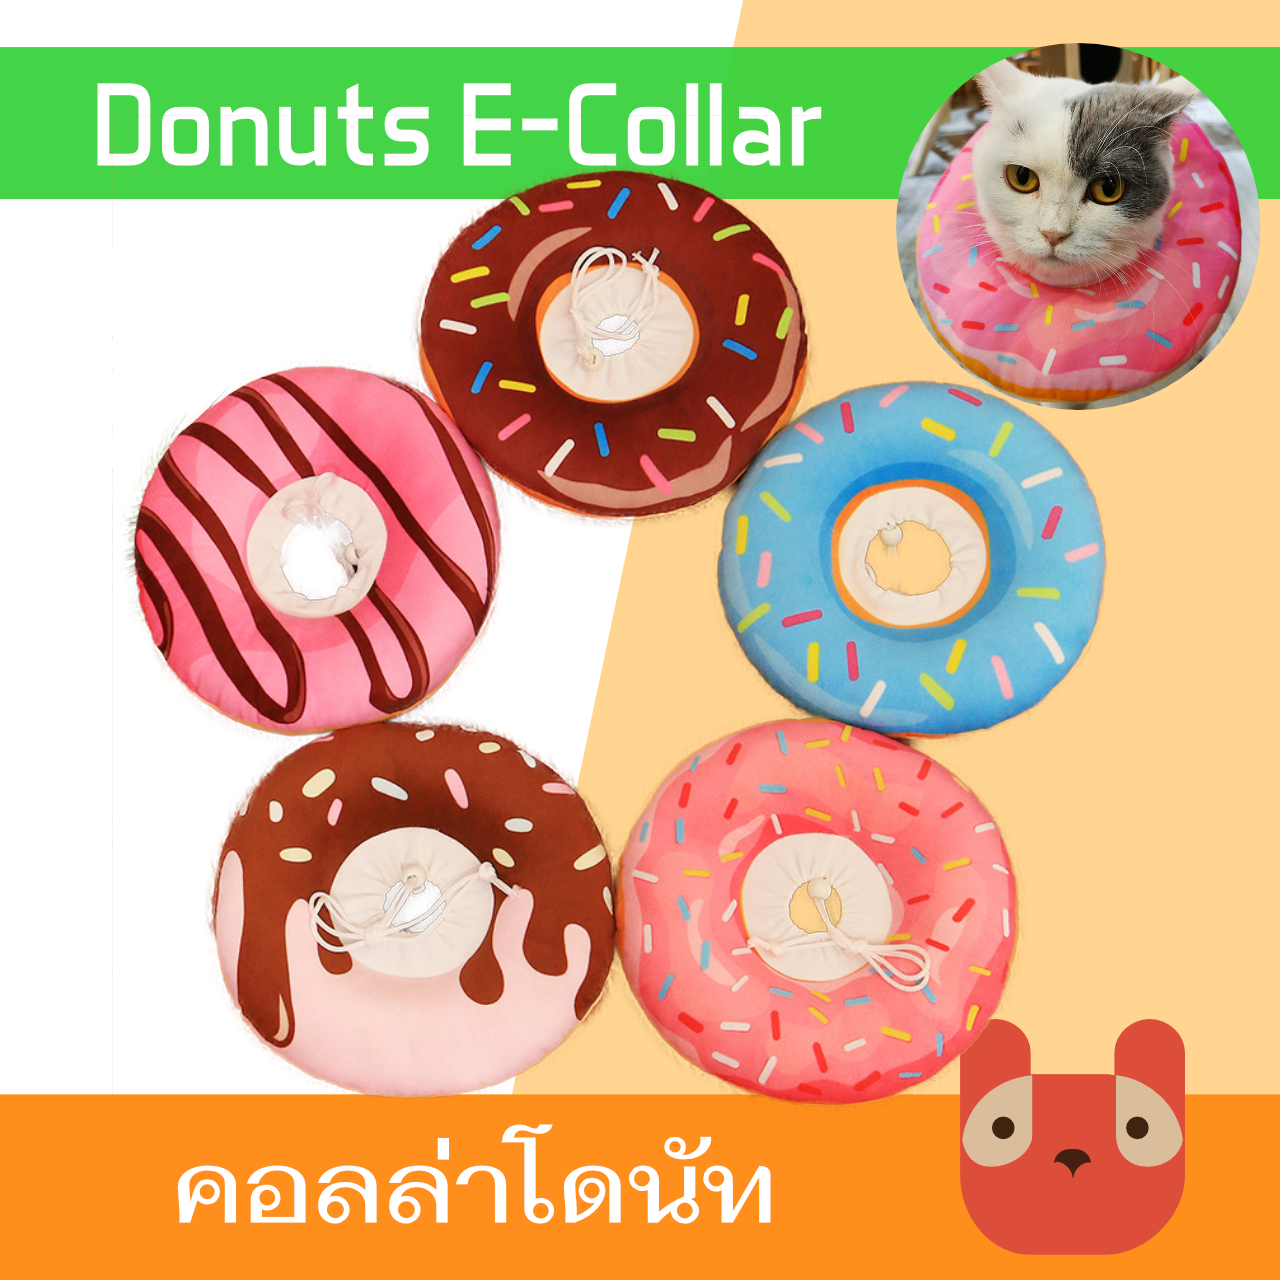 ปลอกคอกันเลีย คอลล่าโดนัท คอลล่าแมว (CC177) Donuts pet Cat dog E-collar